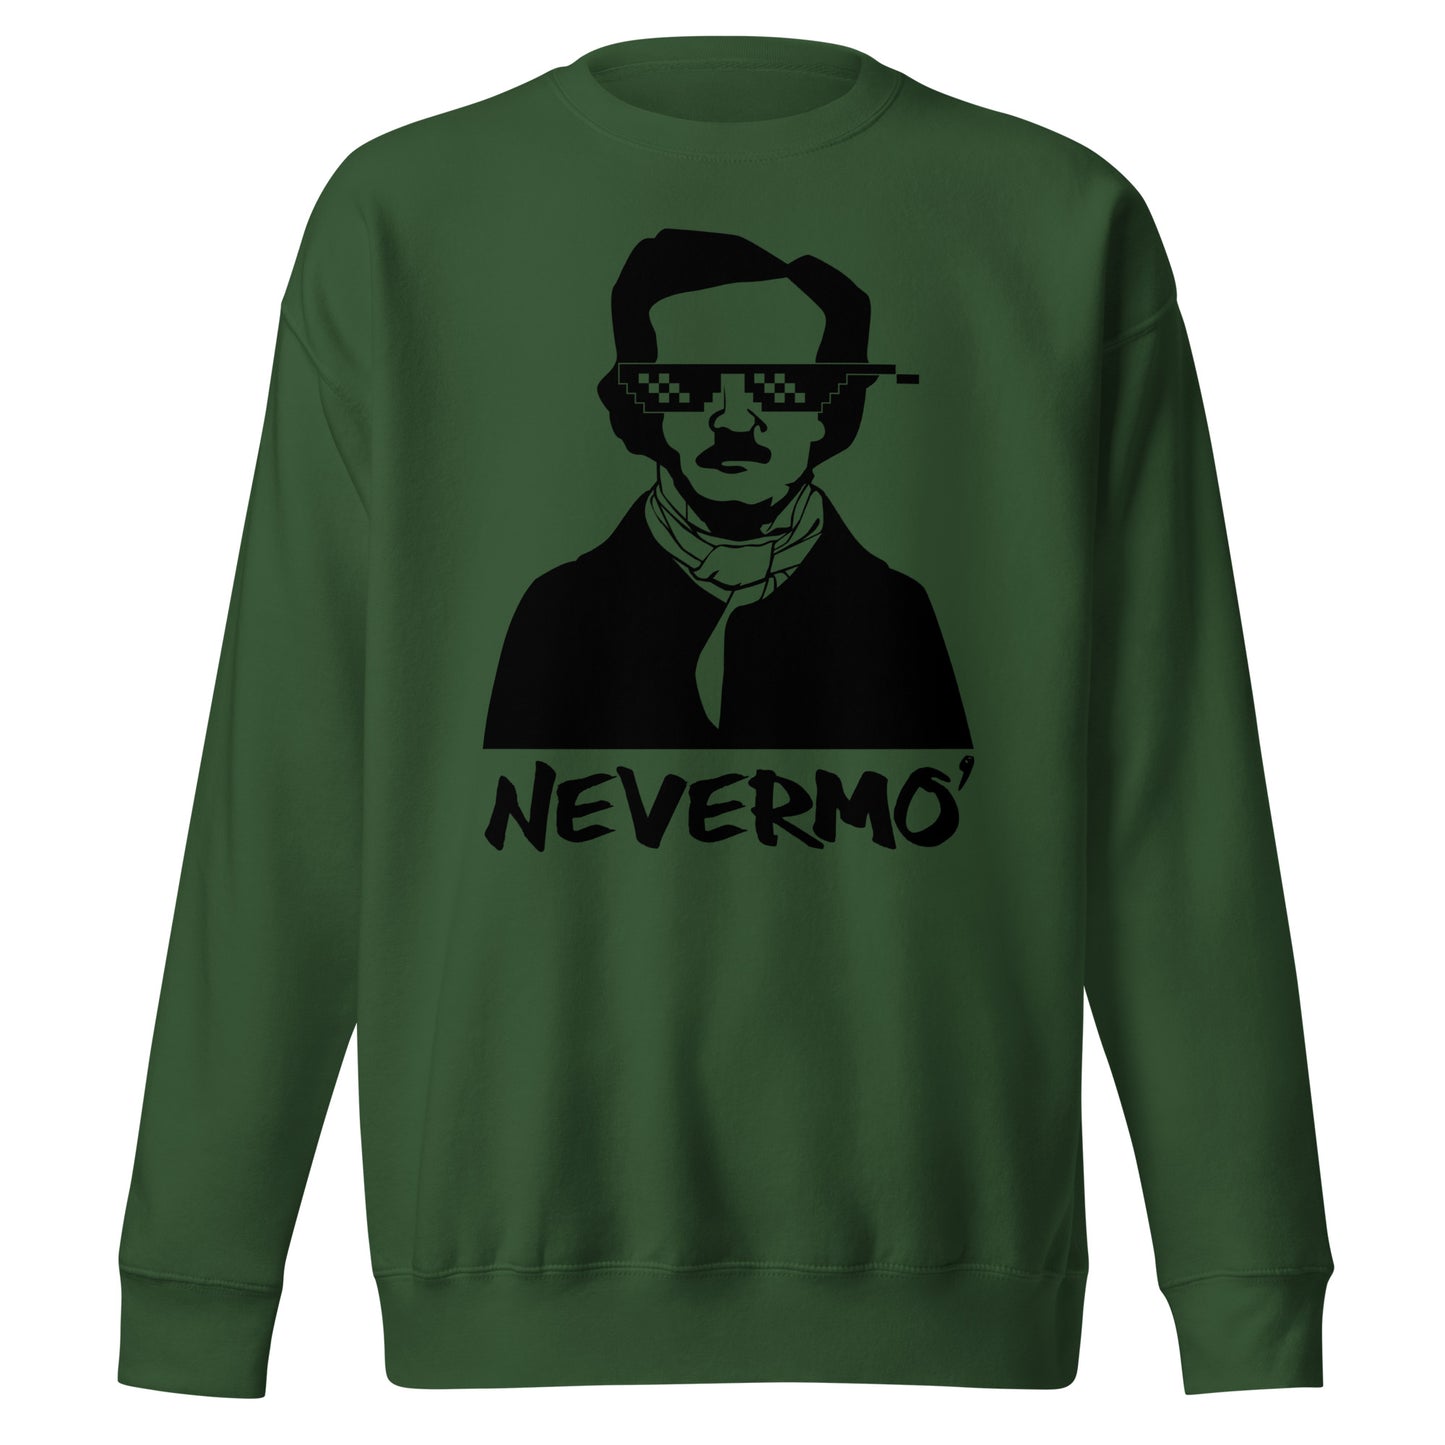 Men's Edgar Allan Poe "Nevermo" Unisex Premium Sweatshirt - Forest Green Front